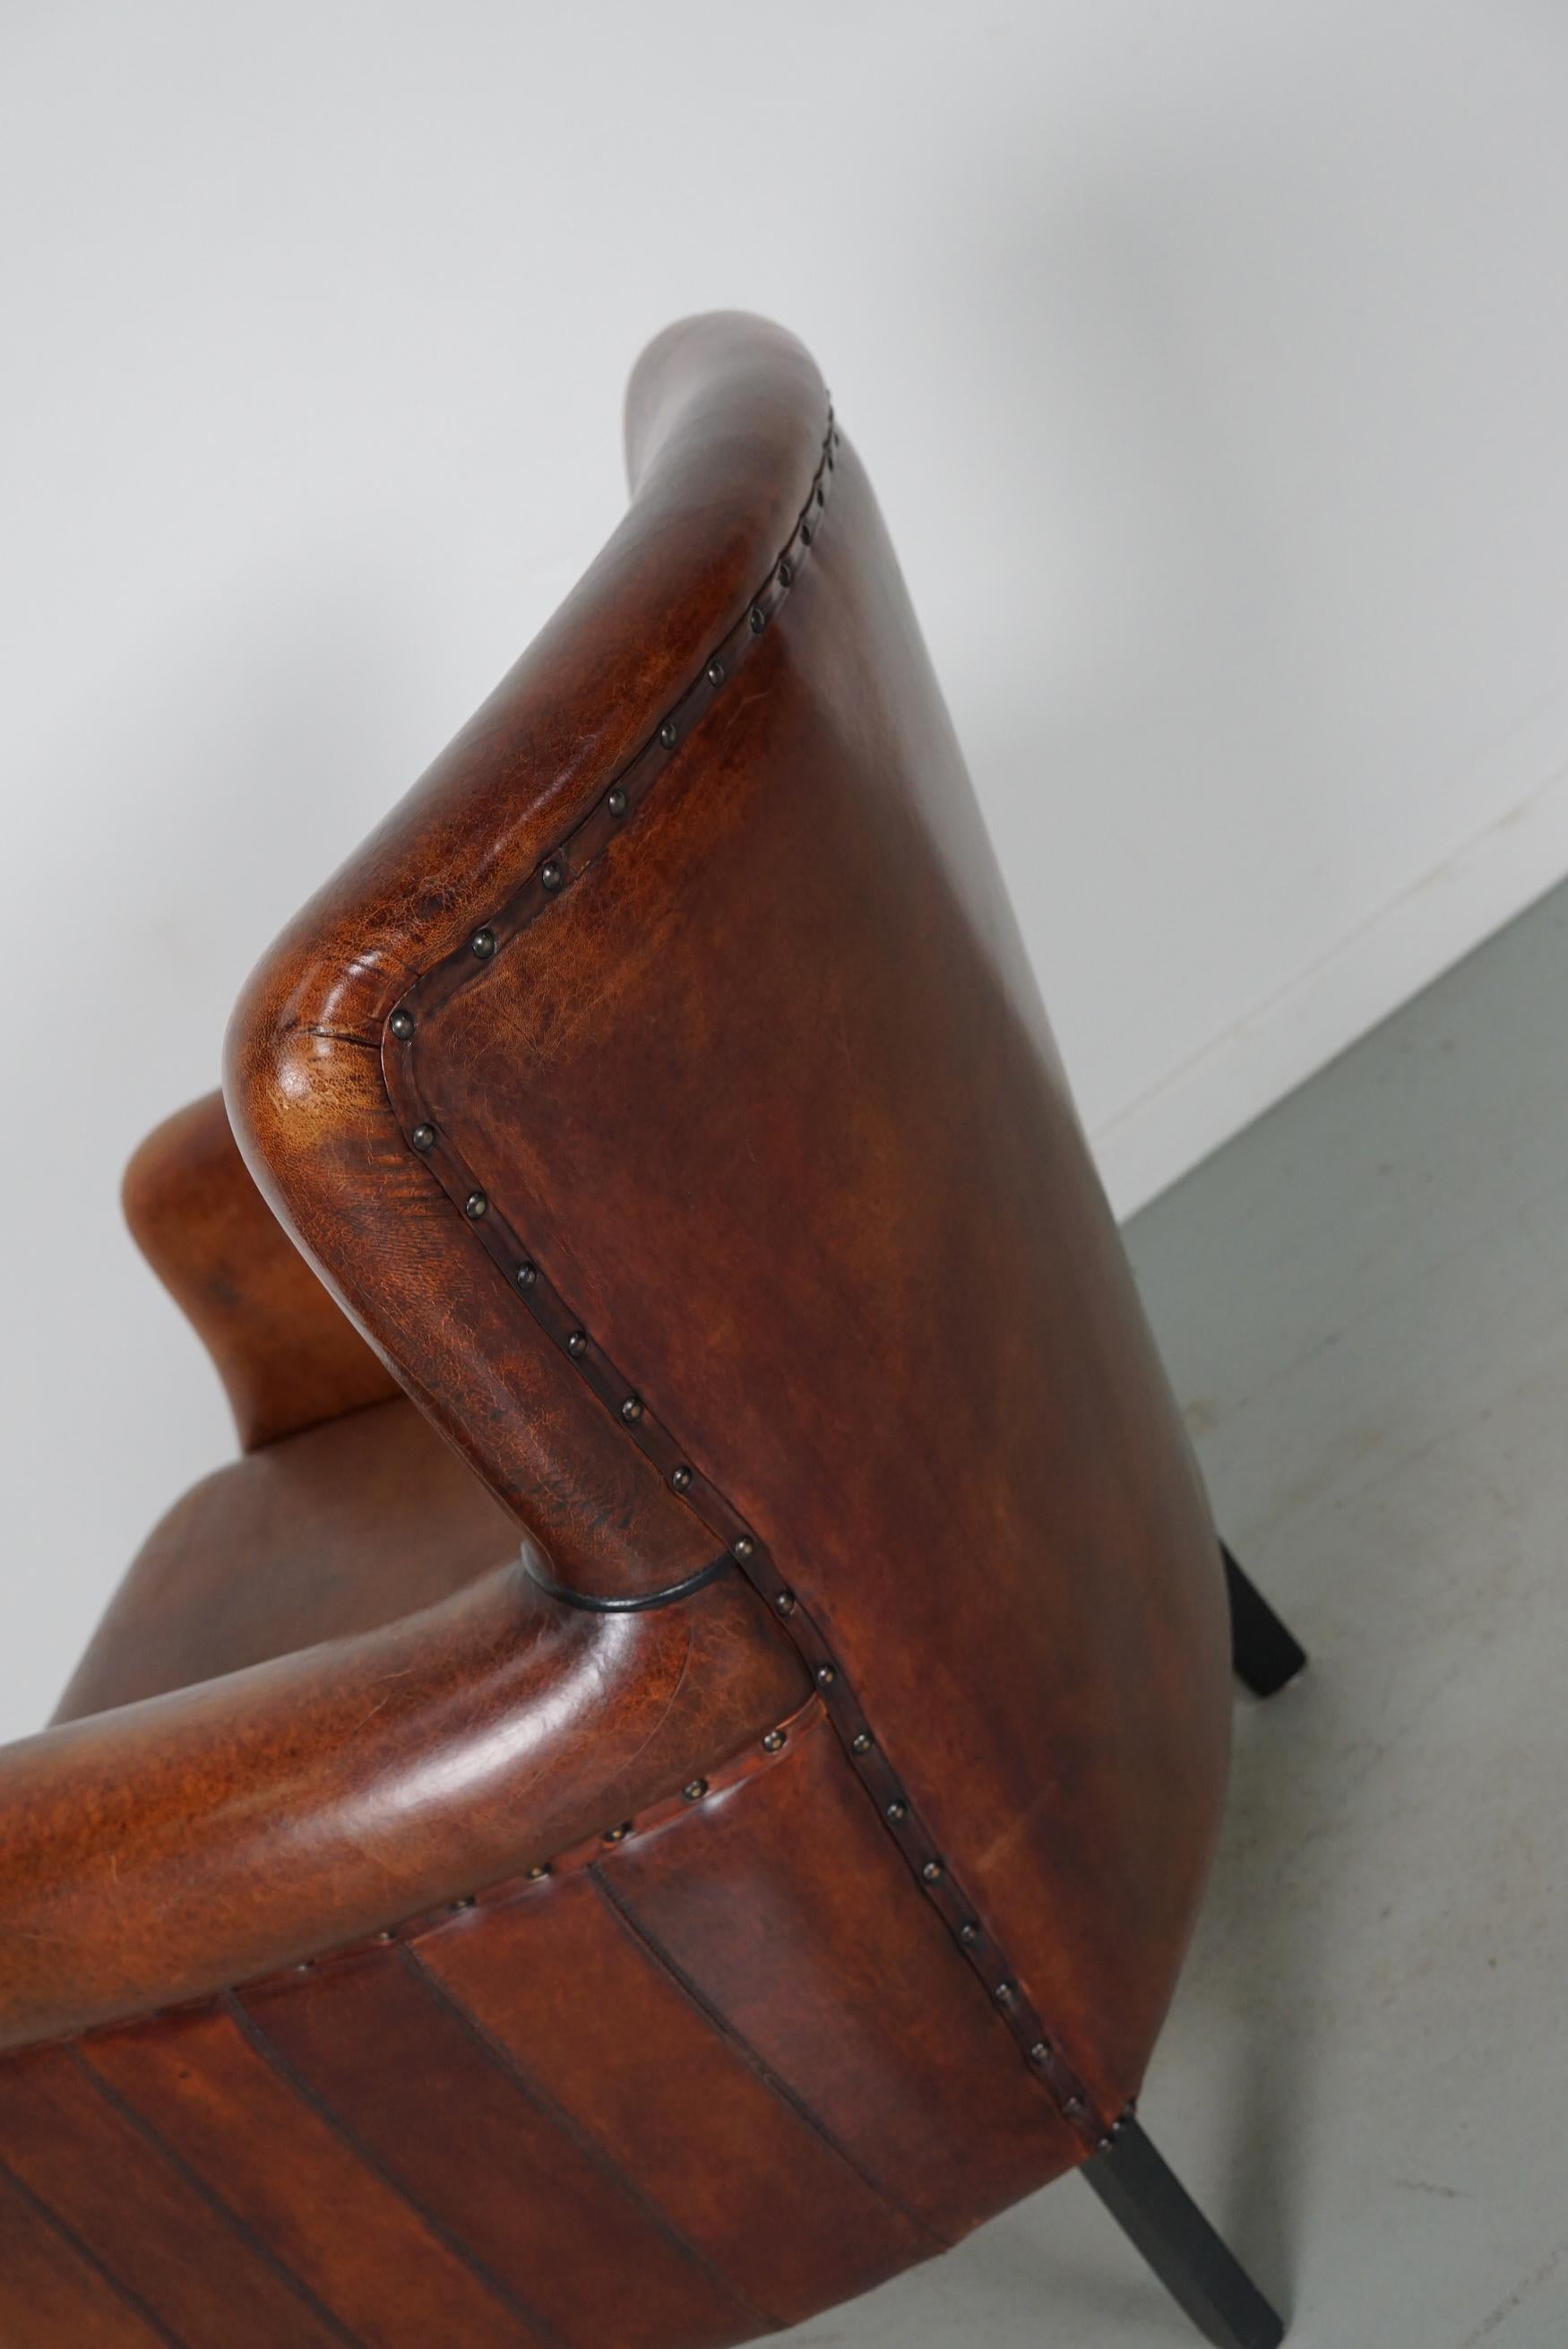 Vintage Dutch Cognac Colored Leather Club Chair 10